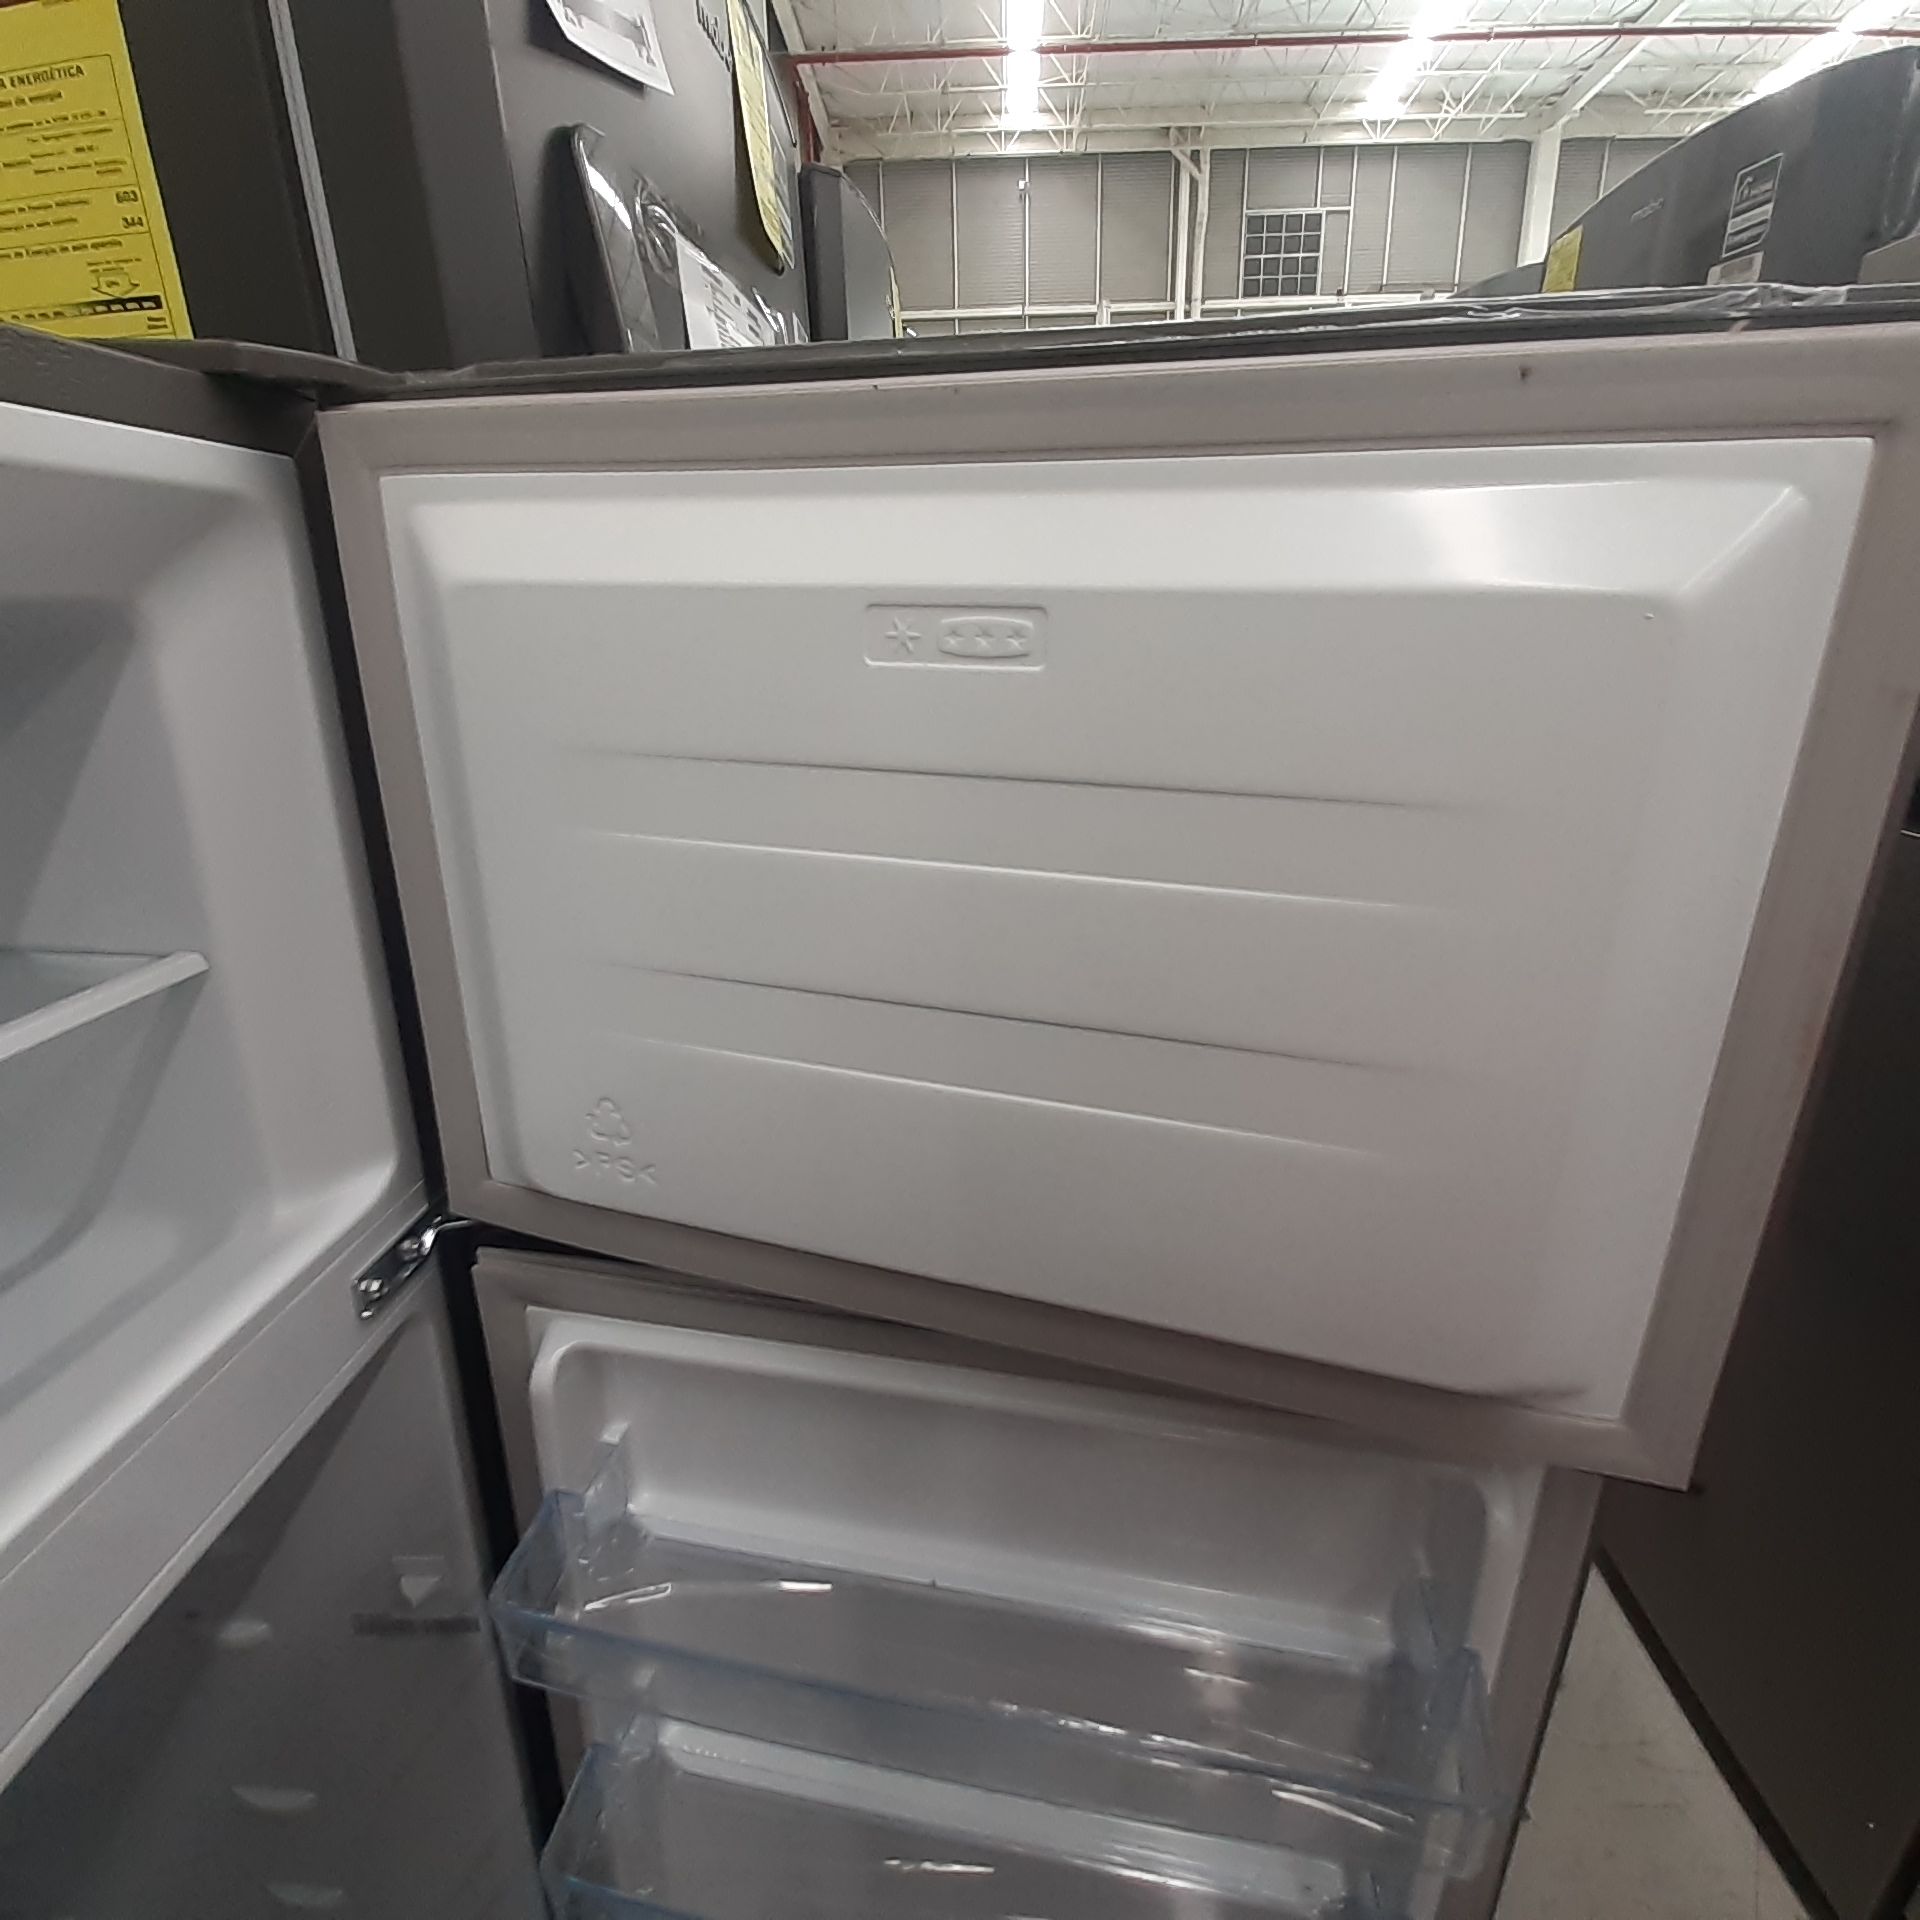 Lote De 2 Refrigeradores: 1 Refrigerador Con Dispensador De Agua Marca Samsung, 1 Refrigerador Marca - Image 16 of 18